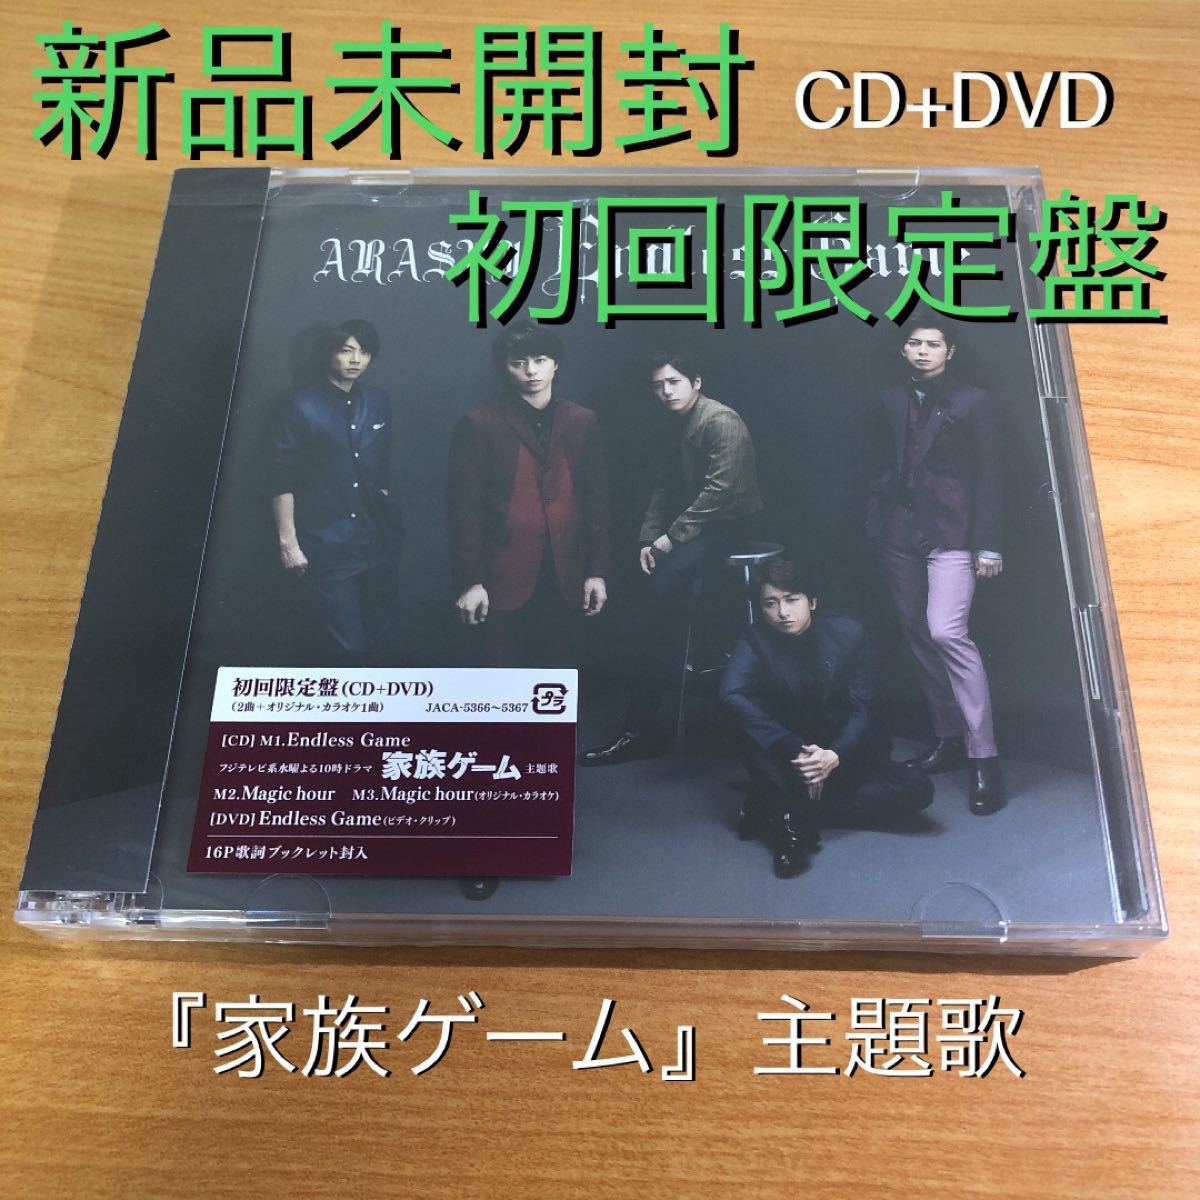 【新品未開封】Endless Game 初回限定盤 CD+DVD/嵐 ARASHI